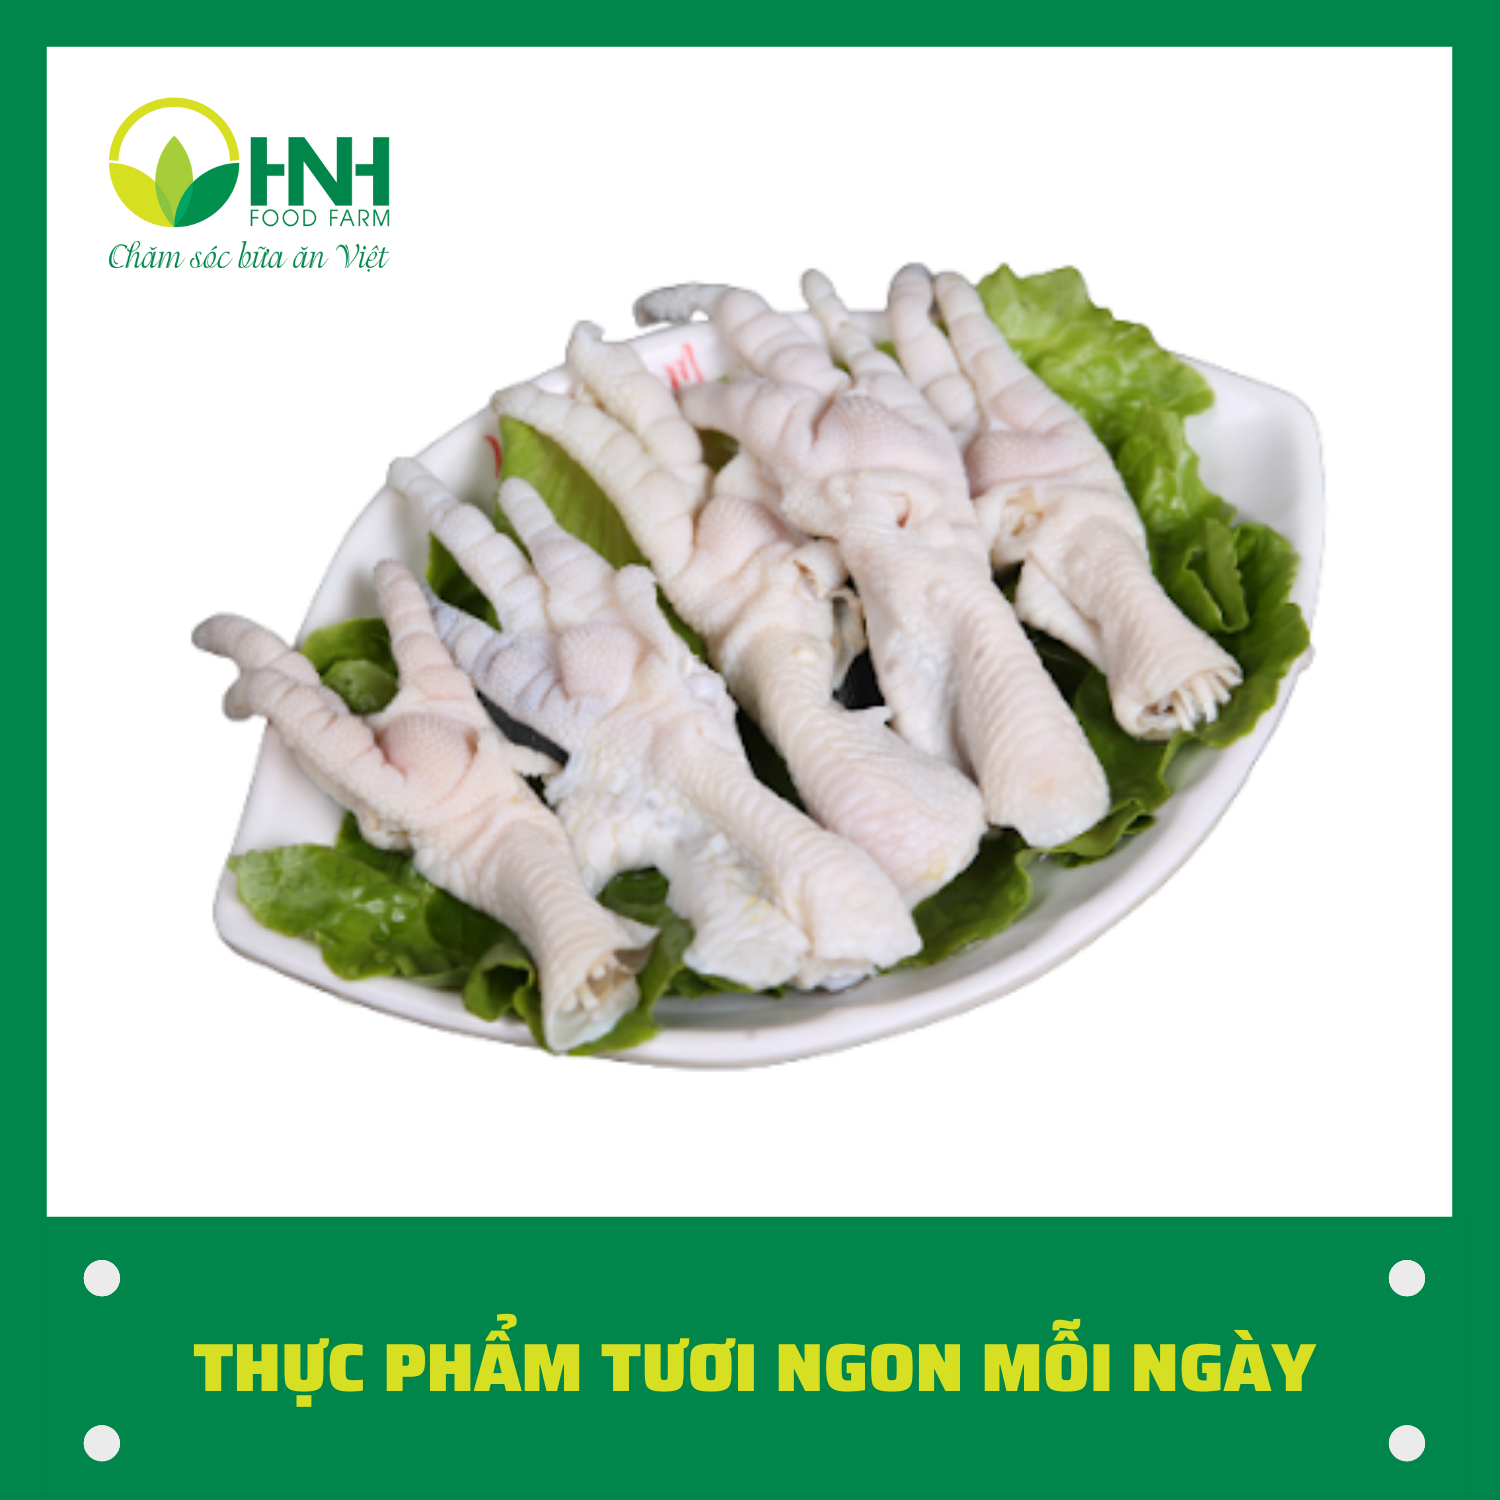 CHỈ GIAO HÀ NỘI Chân gà rút xương sạch chuẩn ngon - HNH Food Farm